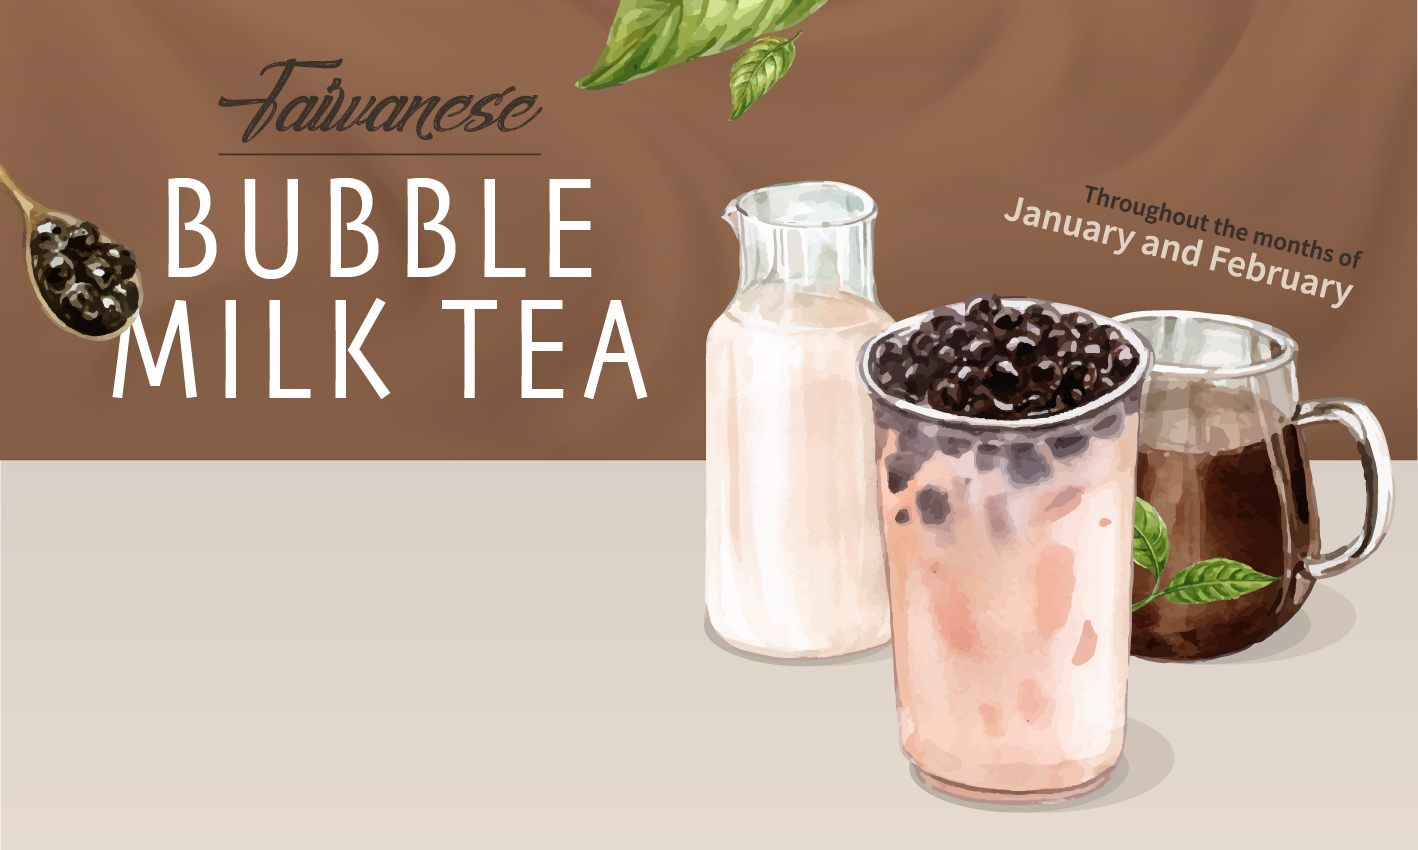 Taiwanese Bubble Milk Tea